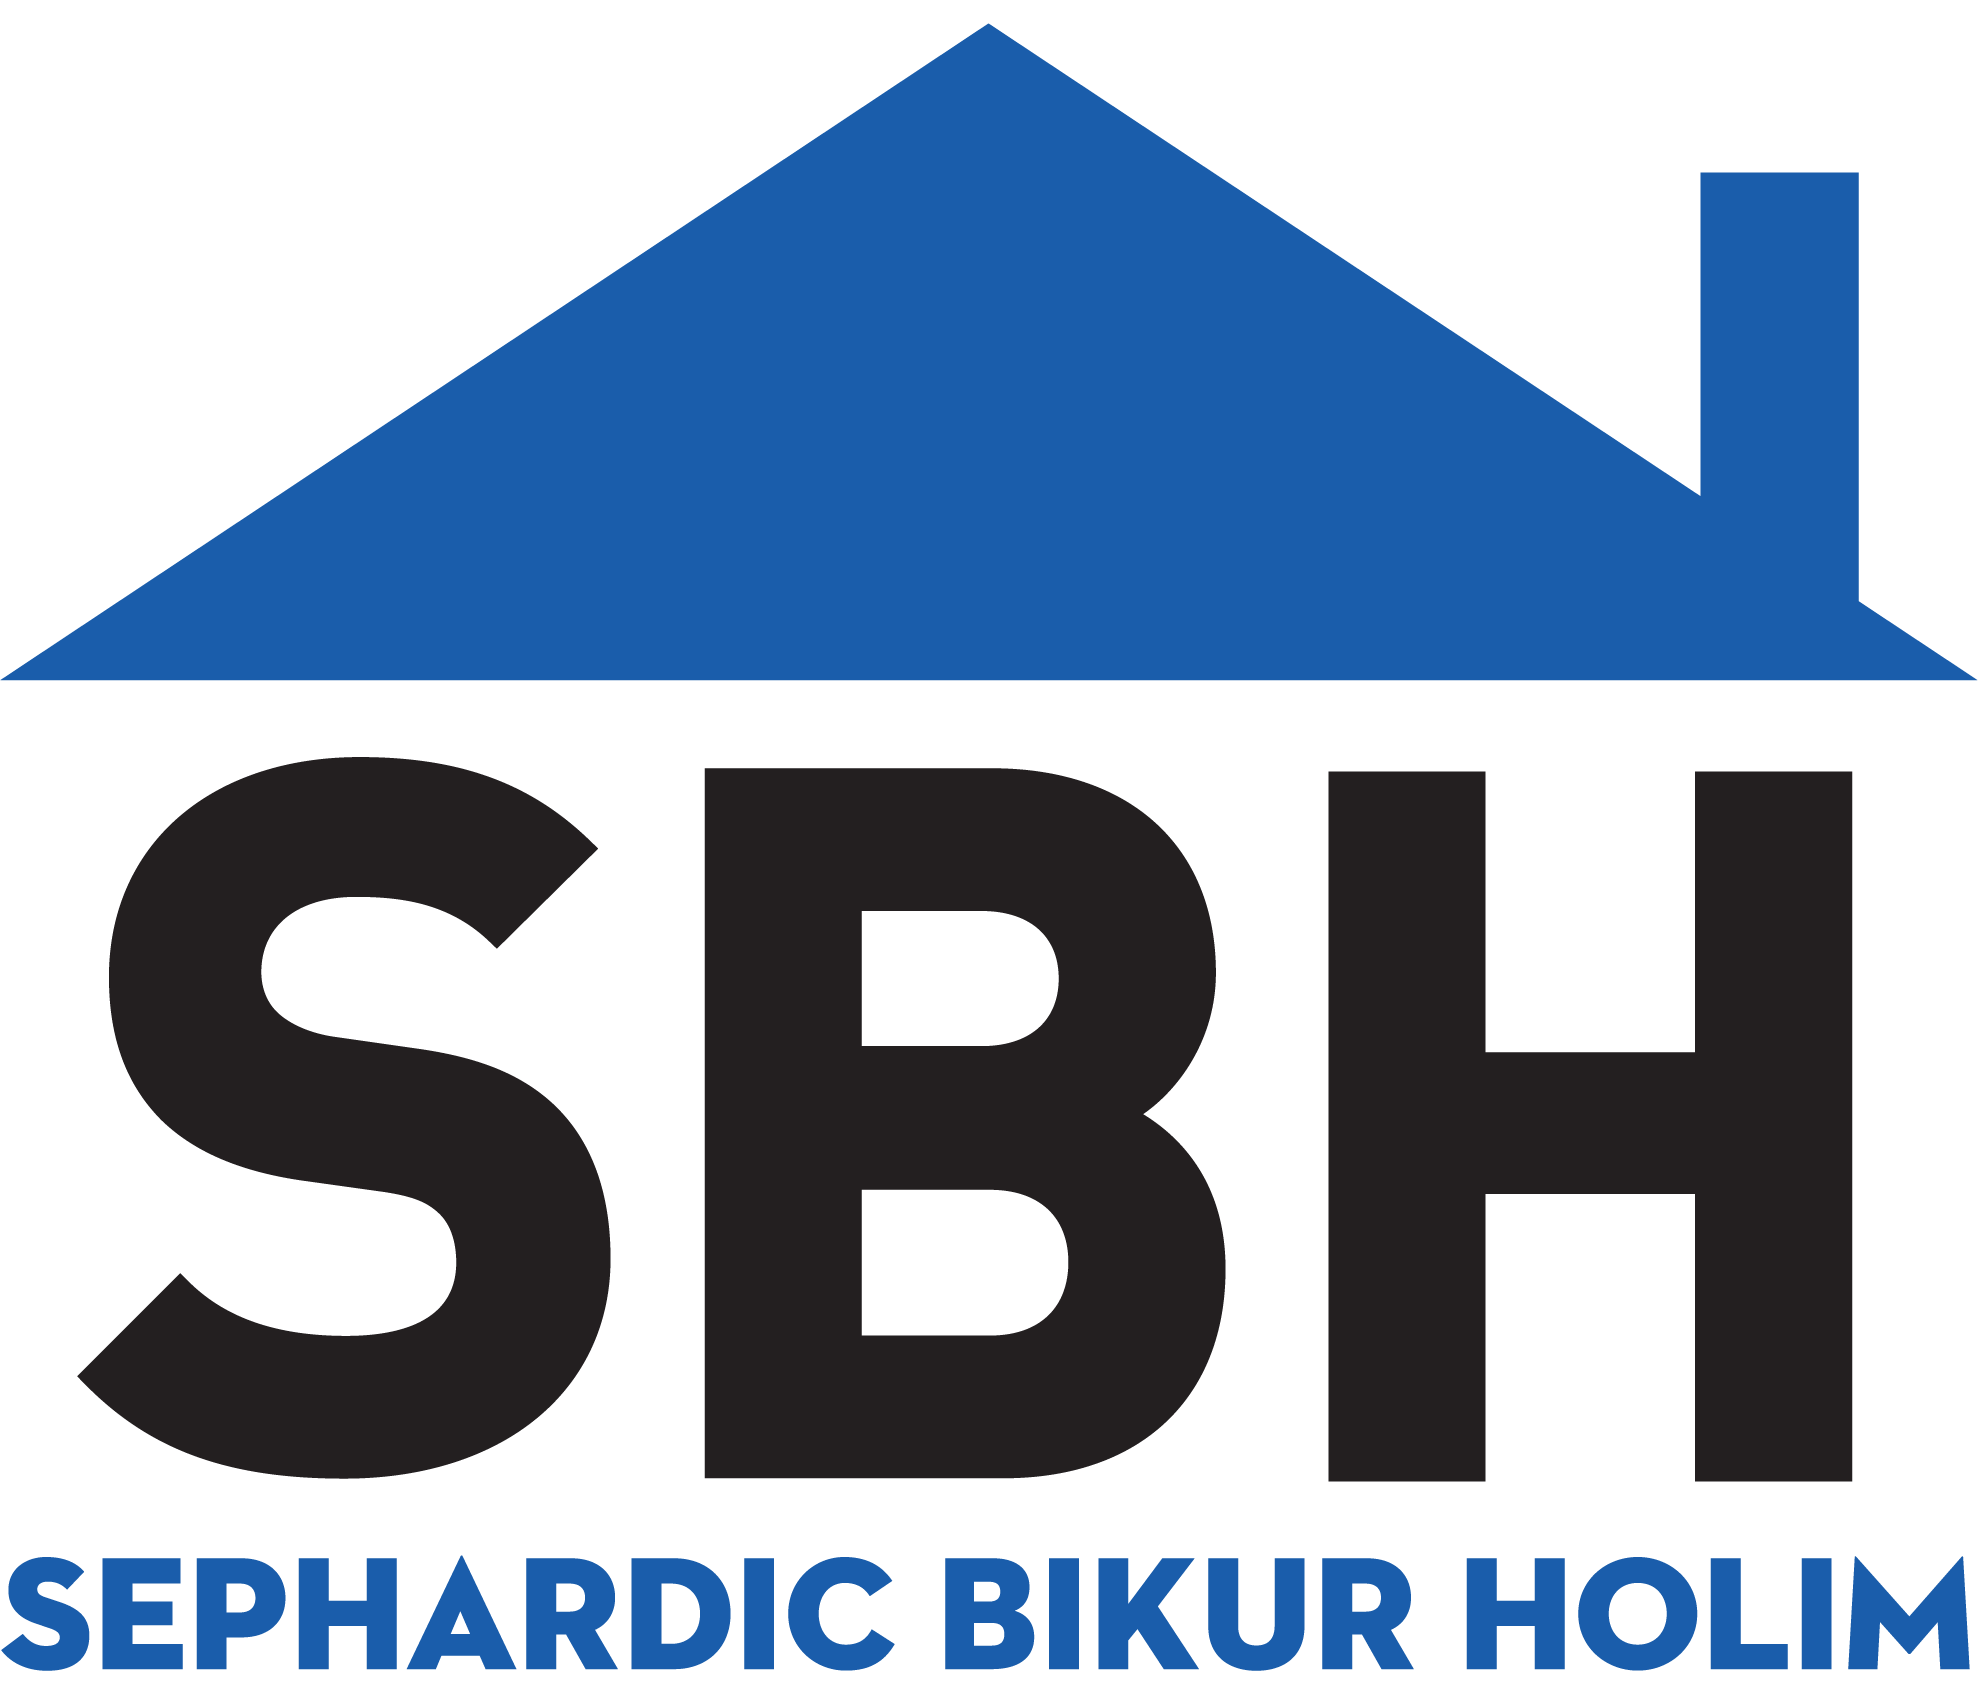 Sephardic Bikur Holim